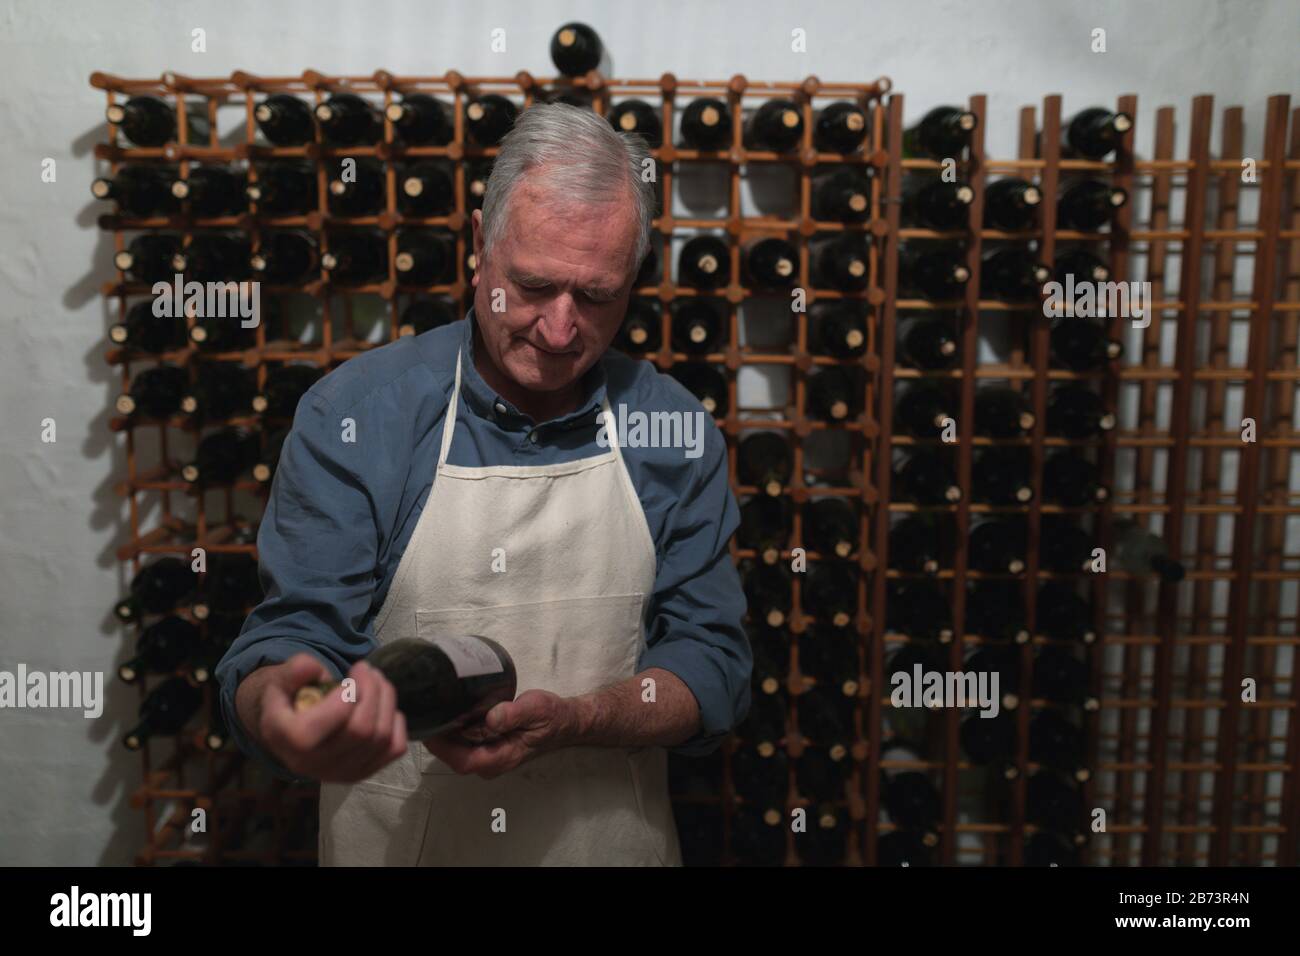 Senior winemaker in his wine cellar Stock Photo